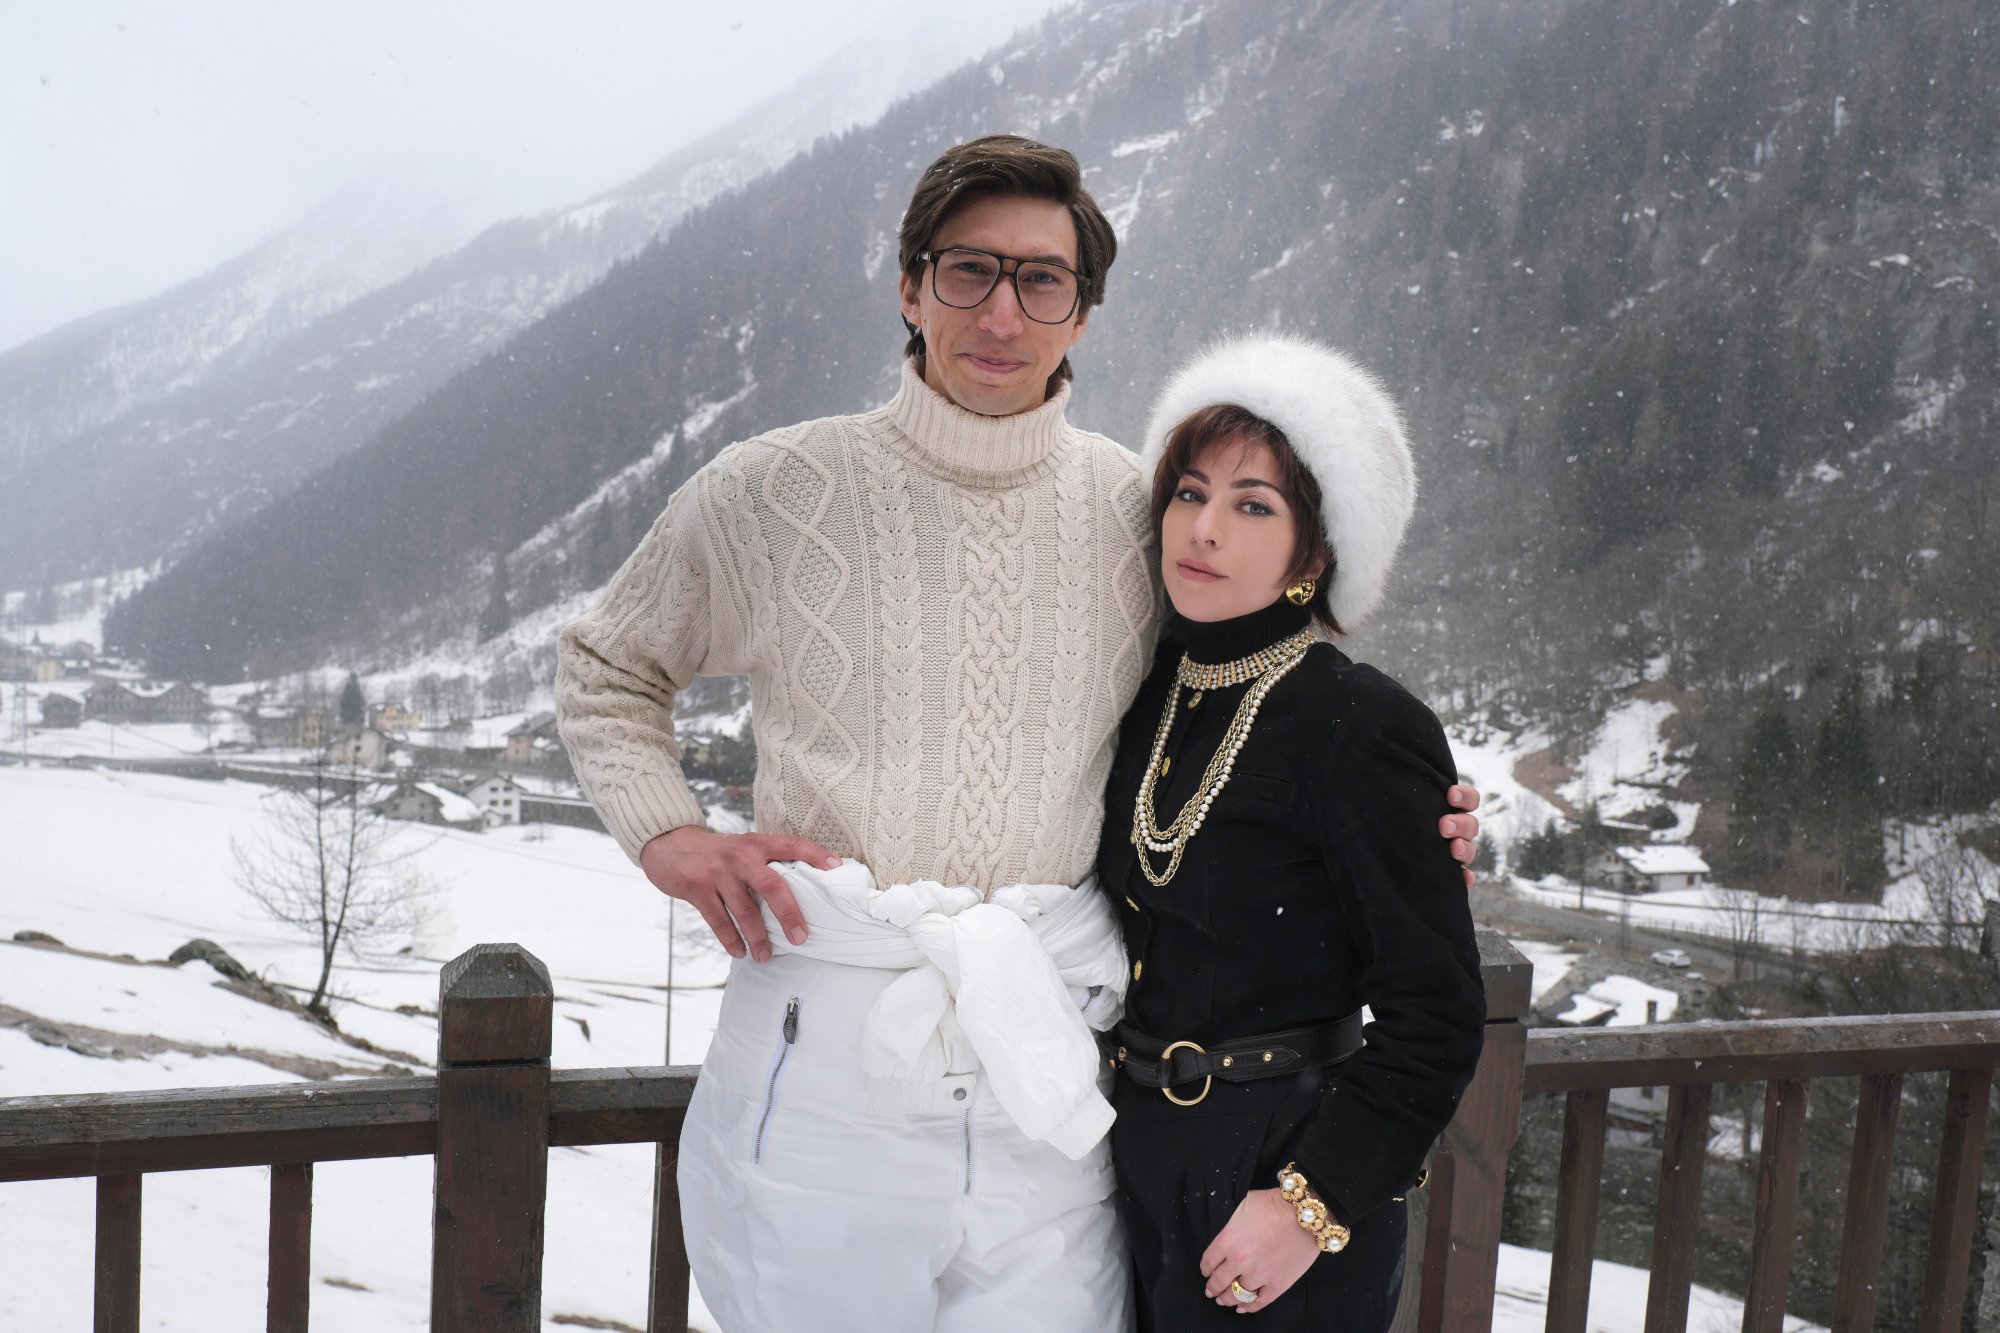 由 Adam Driver 饰演 Maurizio Gucci 和 Lady Gaga 饰演 Patricia Reggiani 穿着雪衣和身后雪景的“古驰之家”的评论